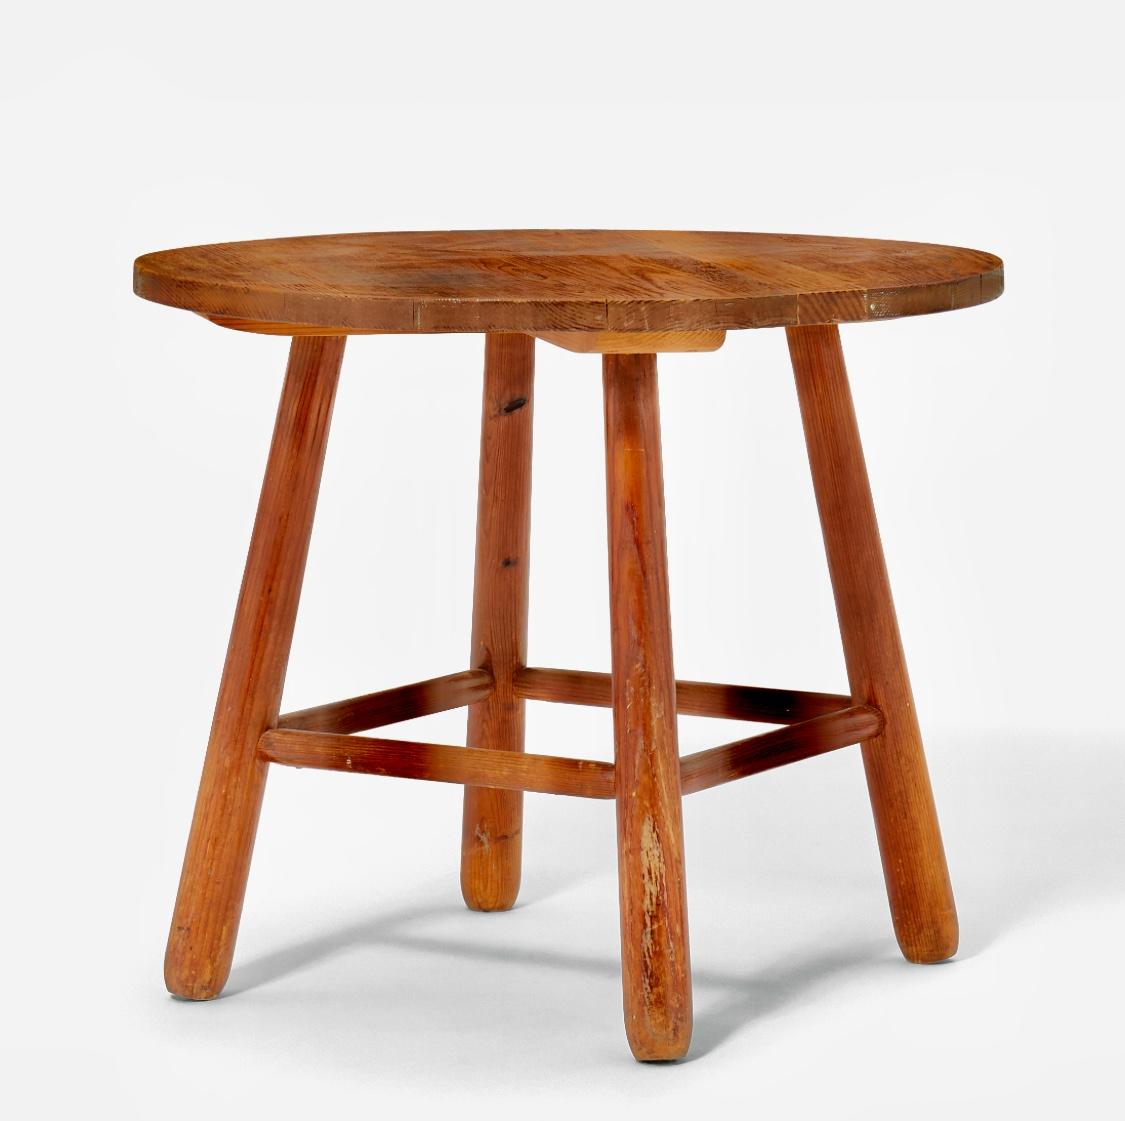 A rare Axel Einar Hjorth pine table, model 